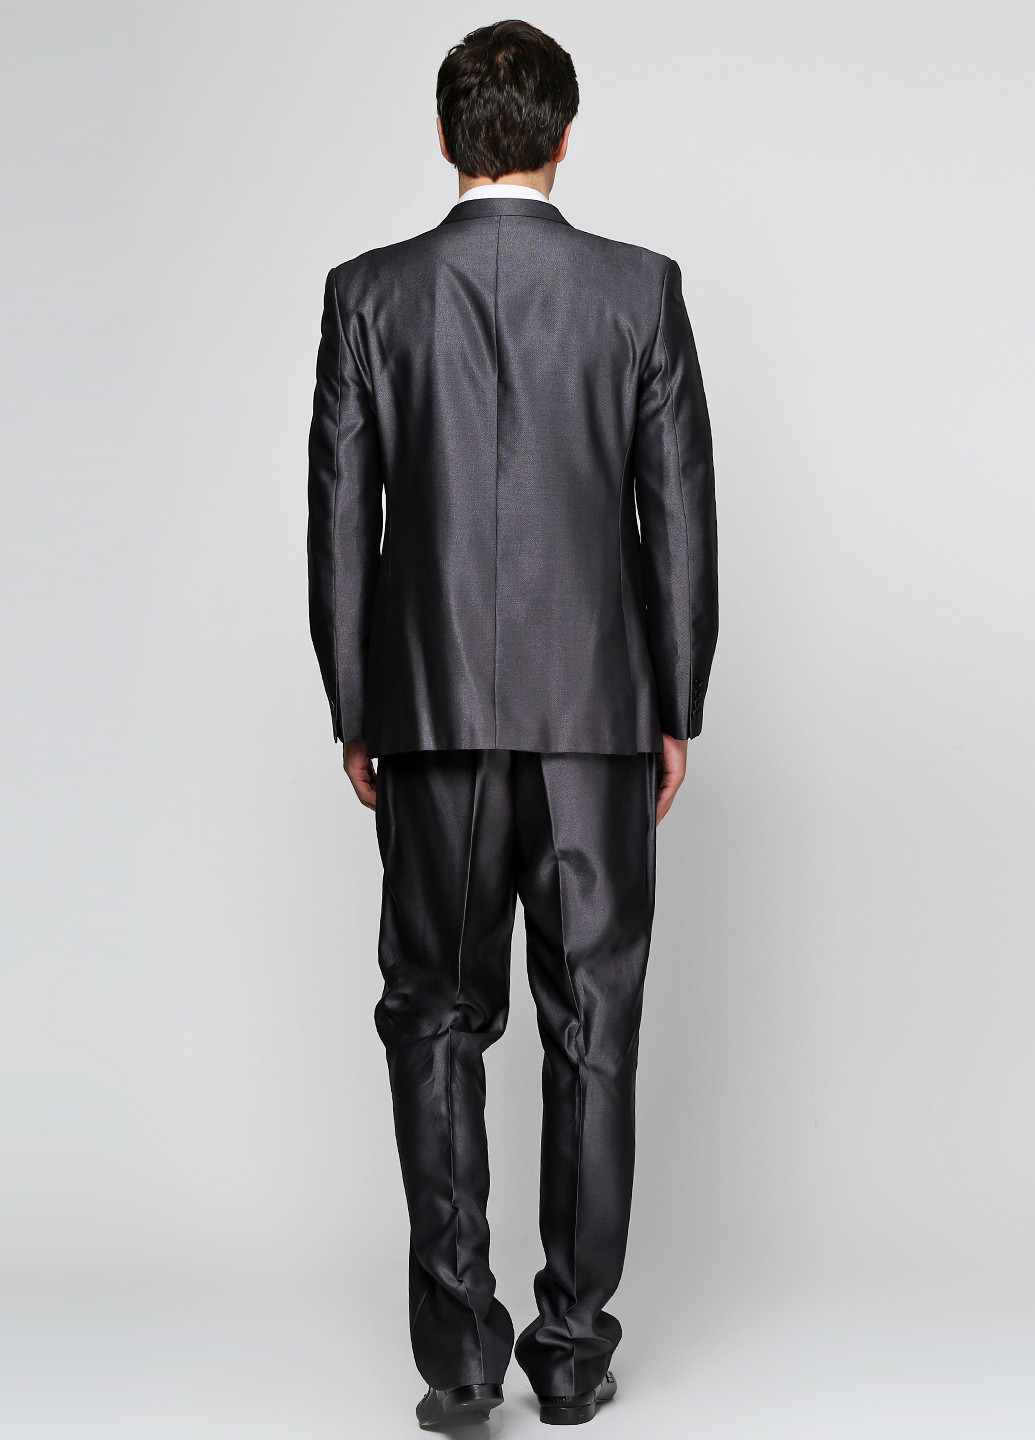 Темно-серый демисезонный костюм (пиджак, брюки) брючный Galant